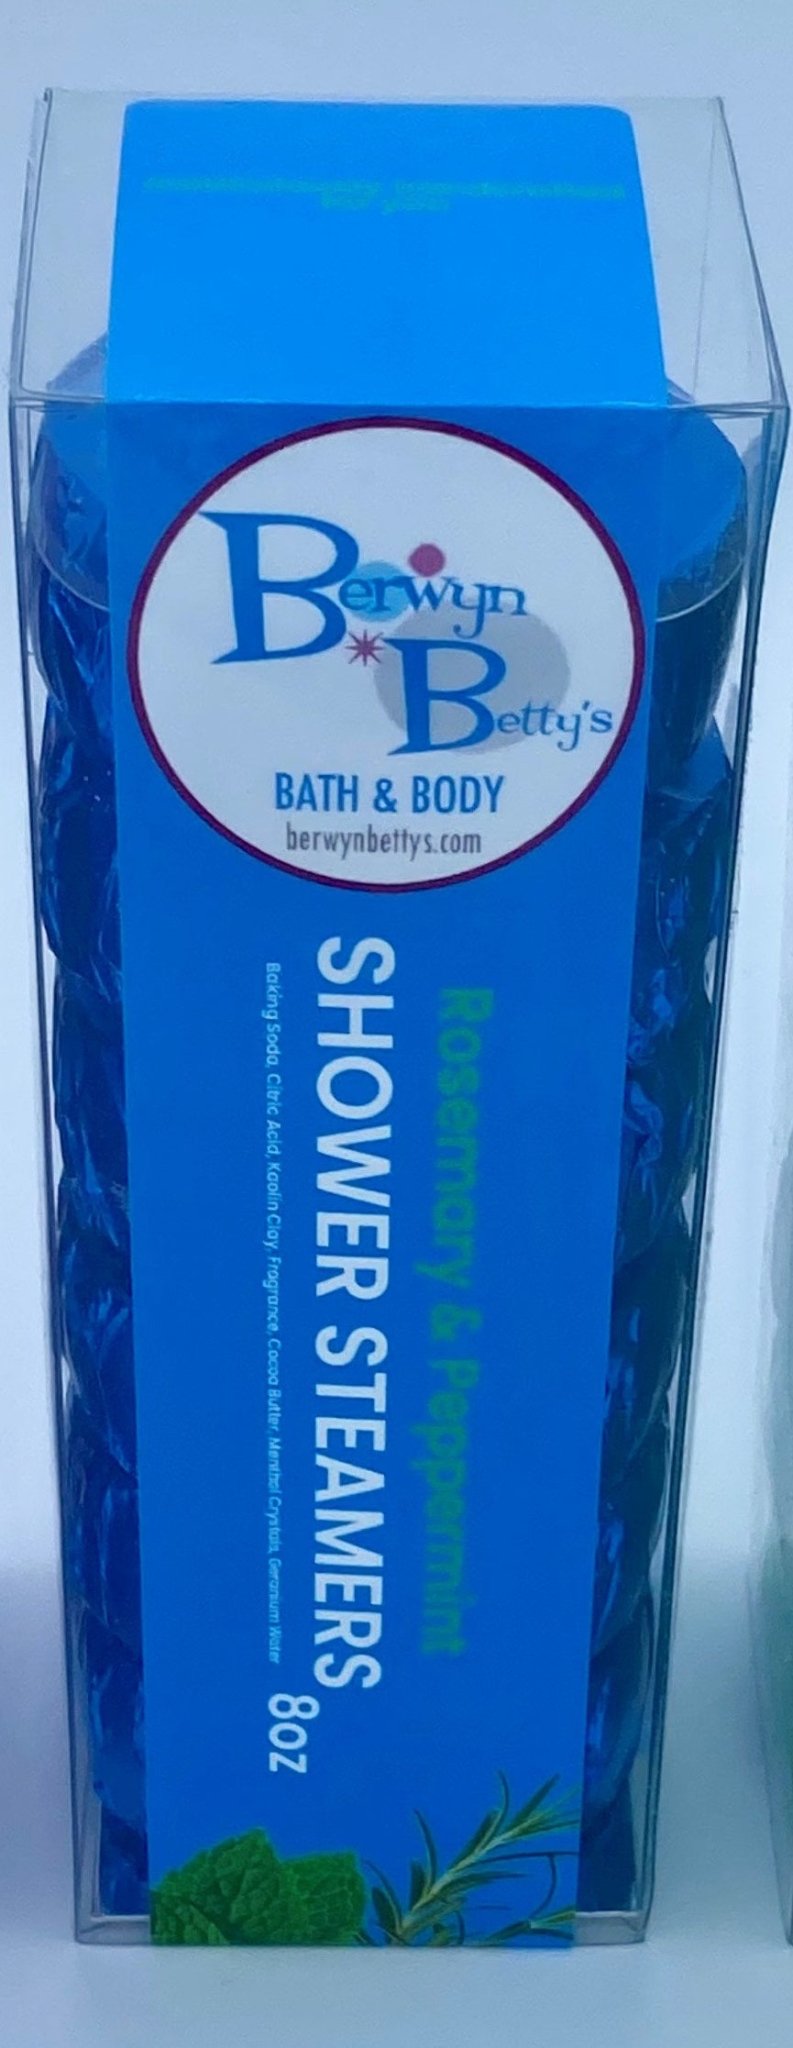 Rosemary & Peppermint Shower Steamers - 6 ct - Berwyn Betty's Bath & Body Shop